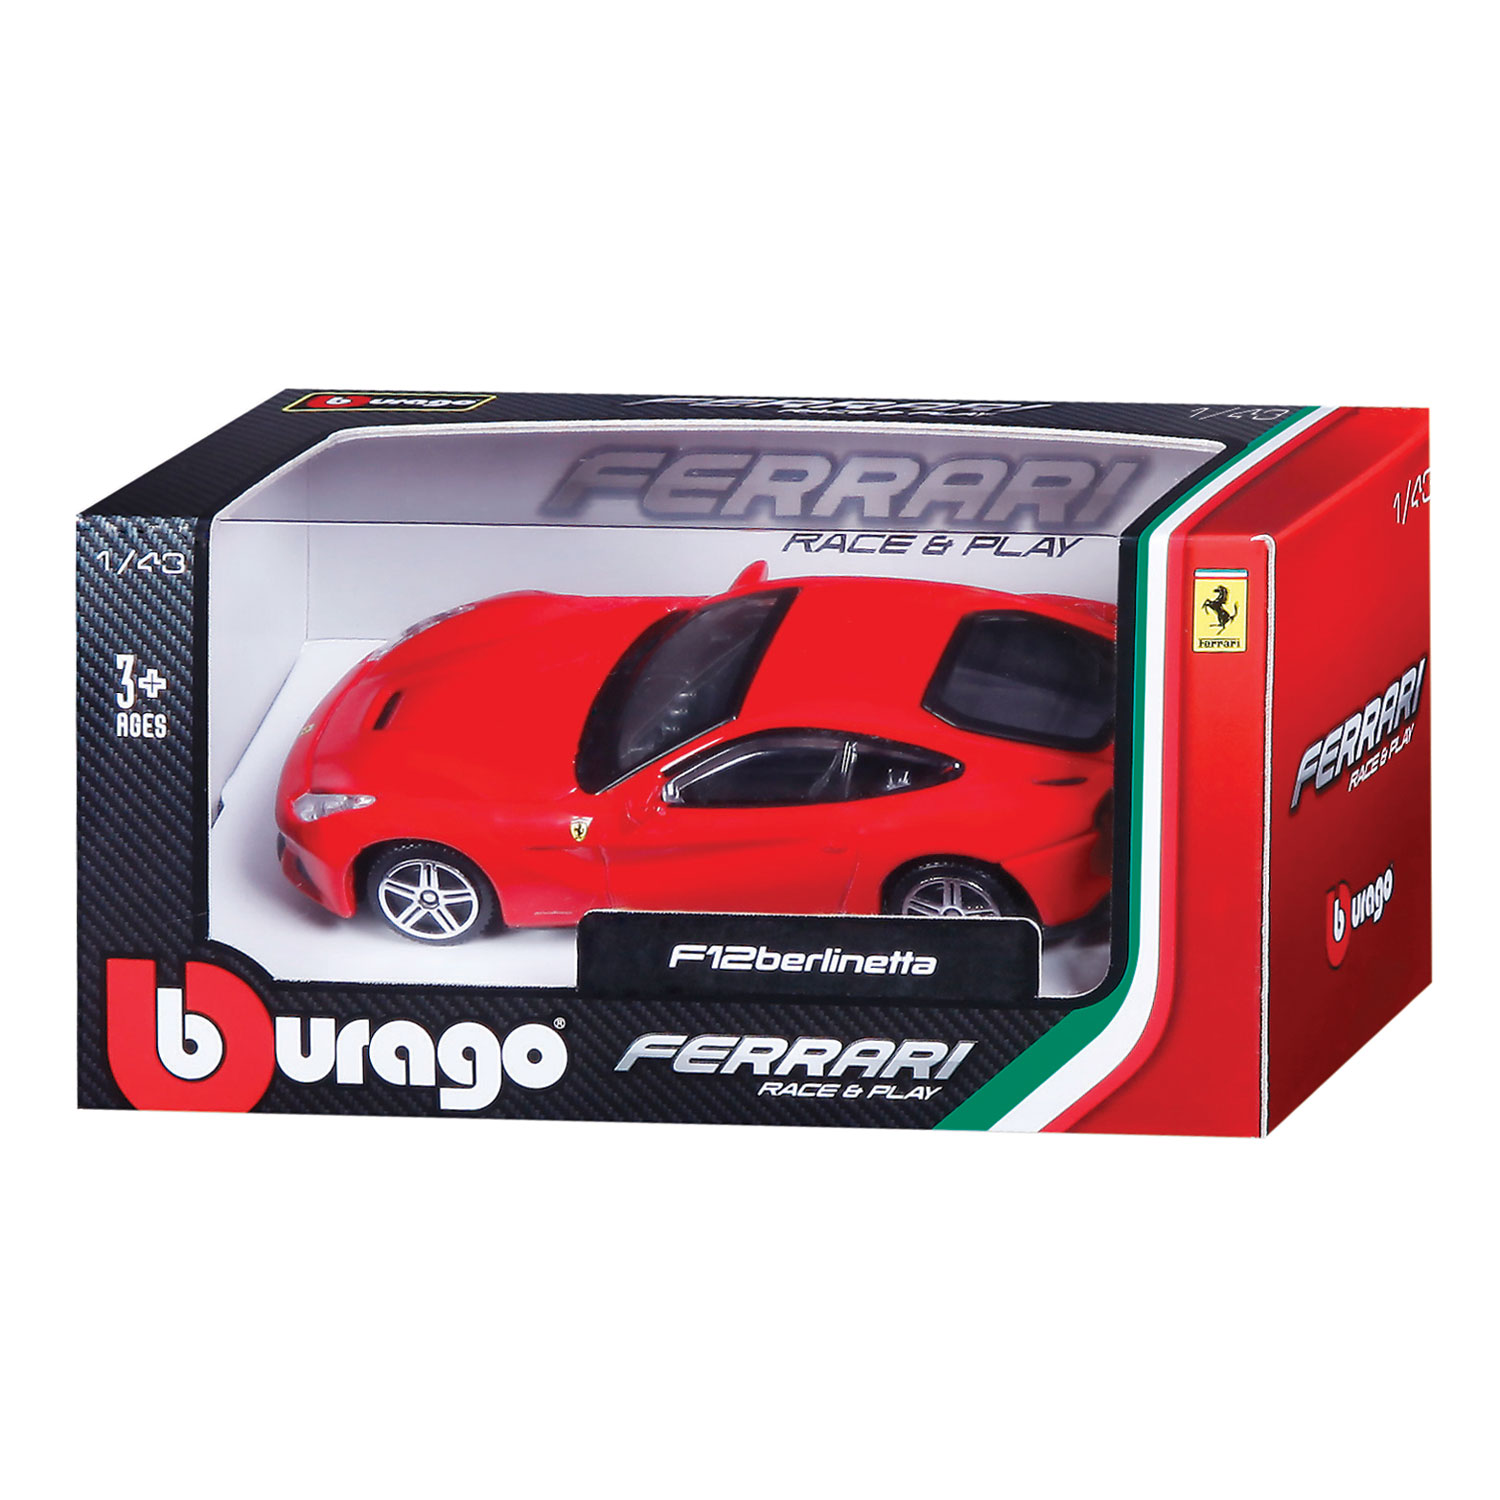 Bburago Ferrari Race & Play Raceauto 1:43